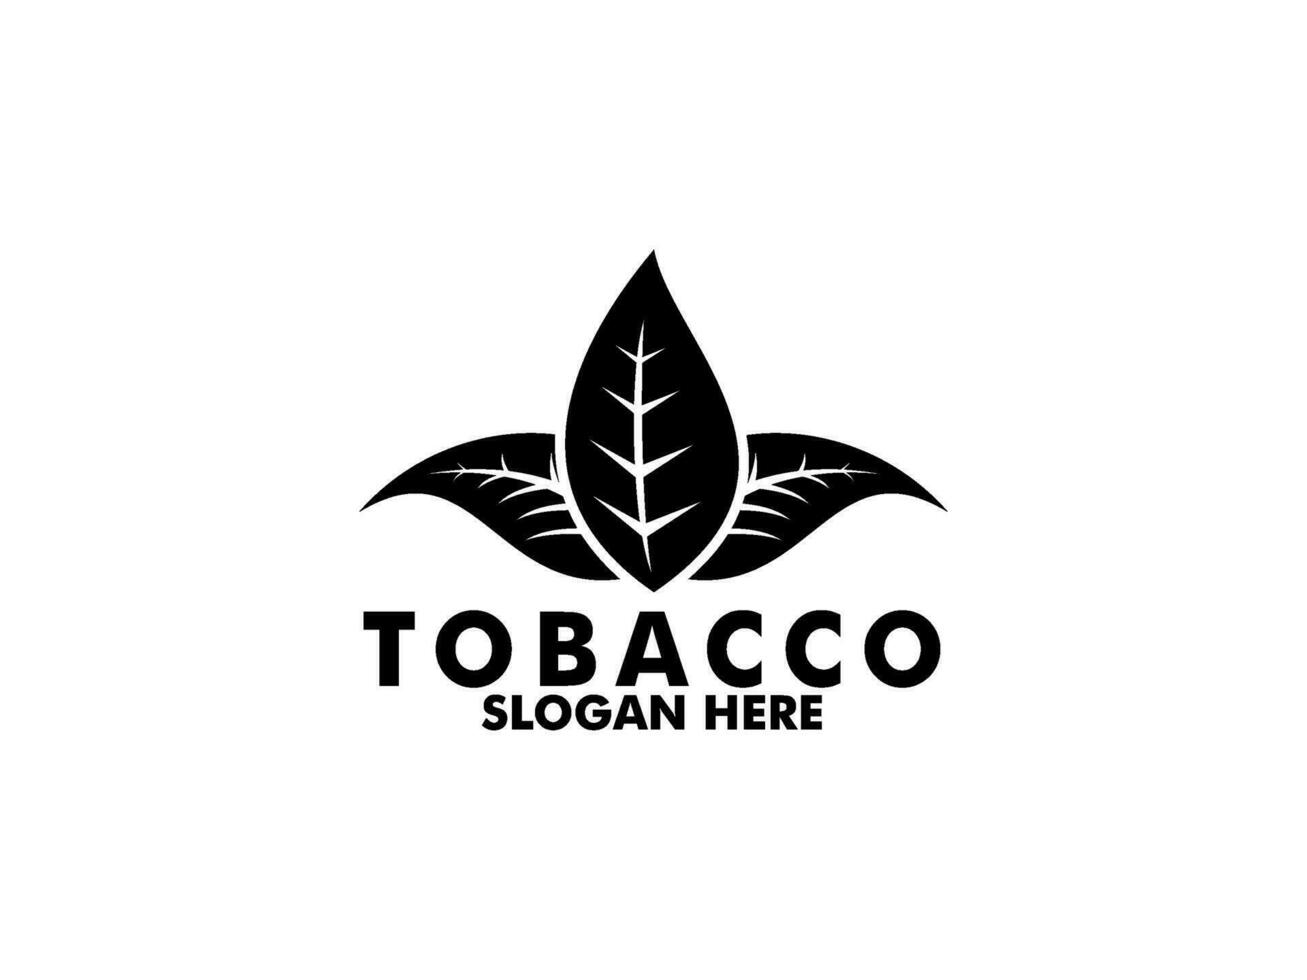 Tobacco logo vector, Creative Tobacco logo design template vector